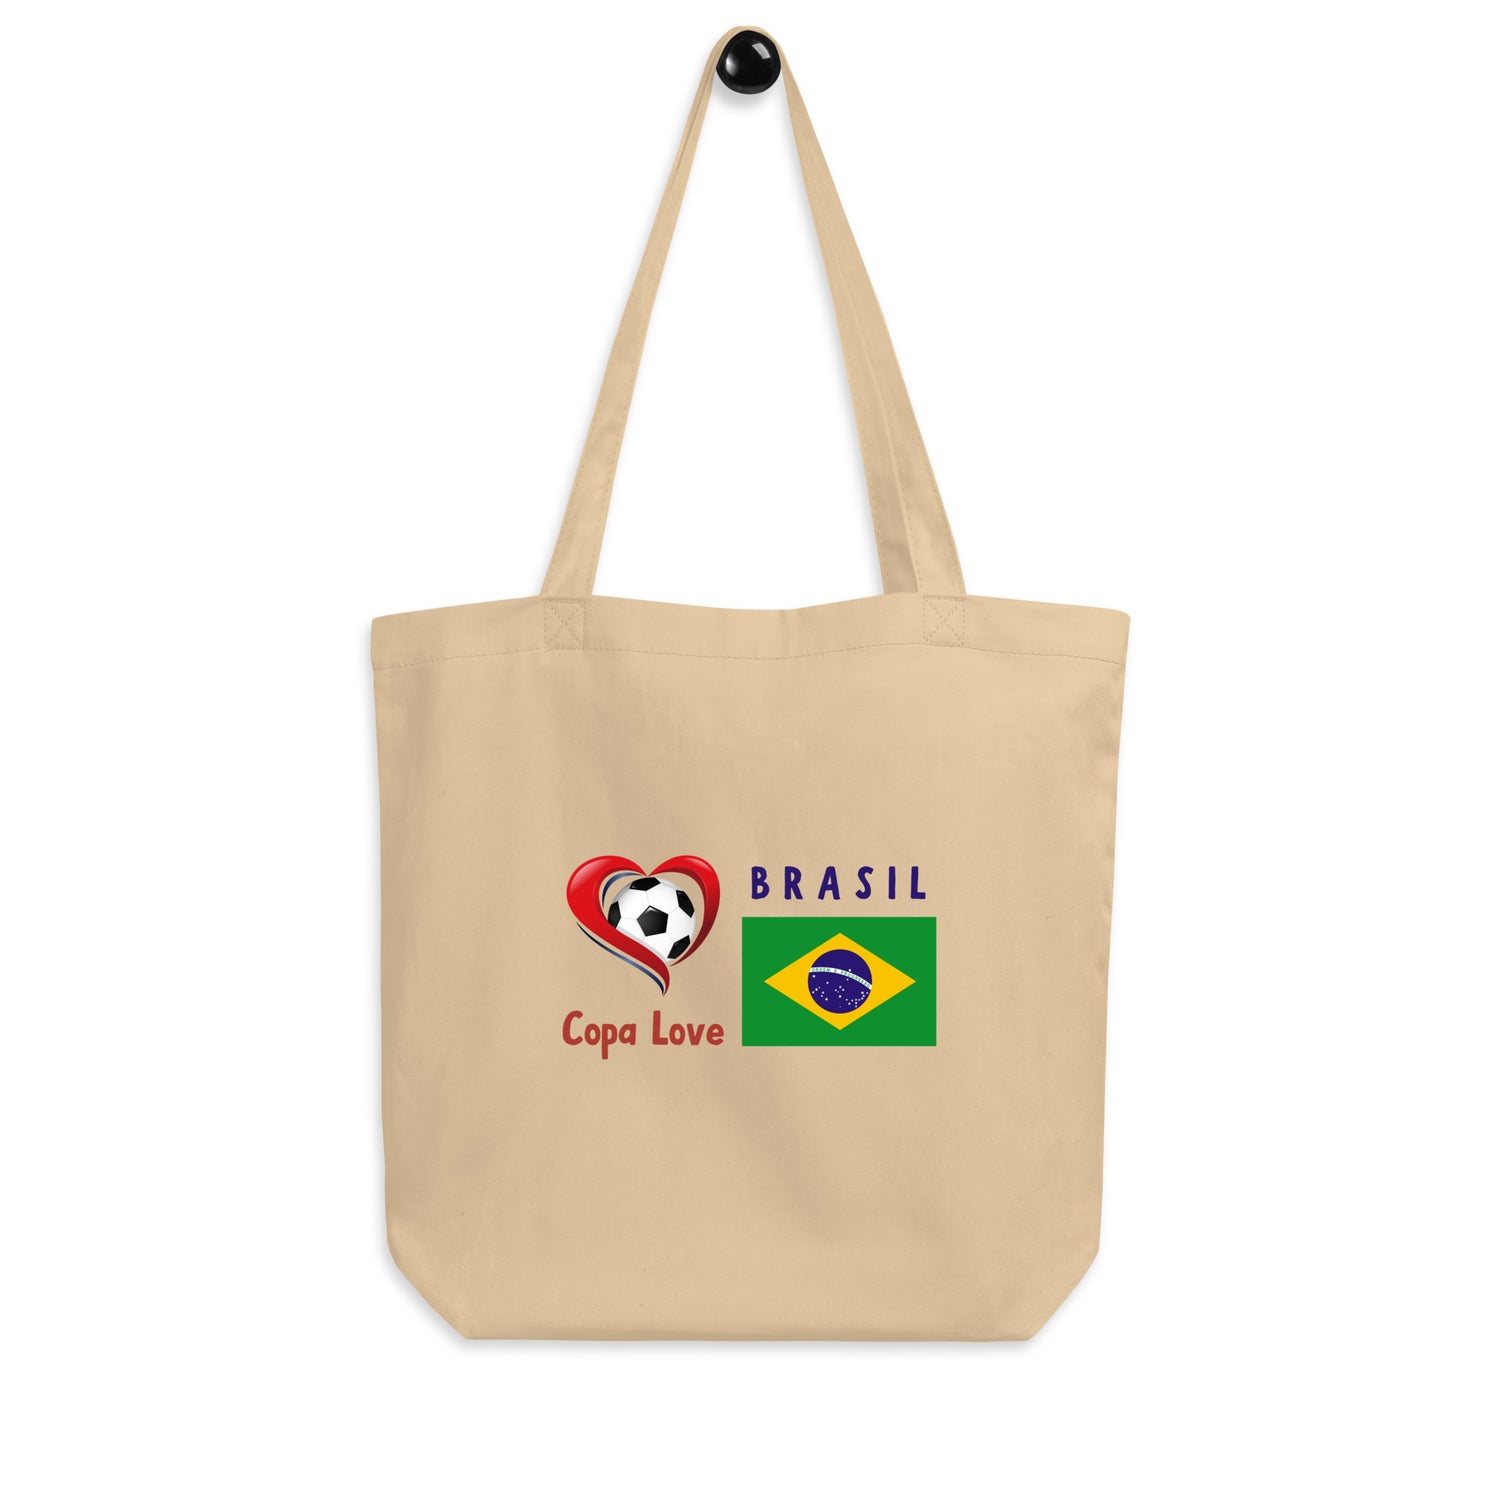 BRASIL - Copa Love Eco Tote Bag